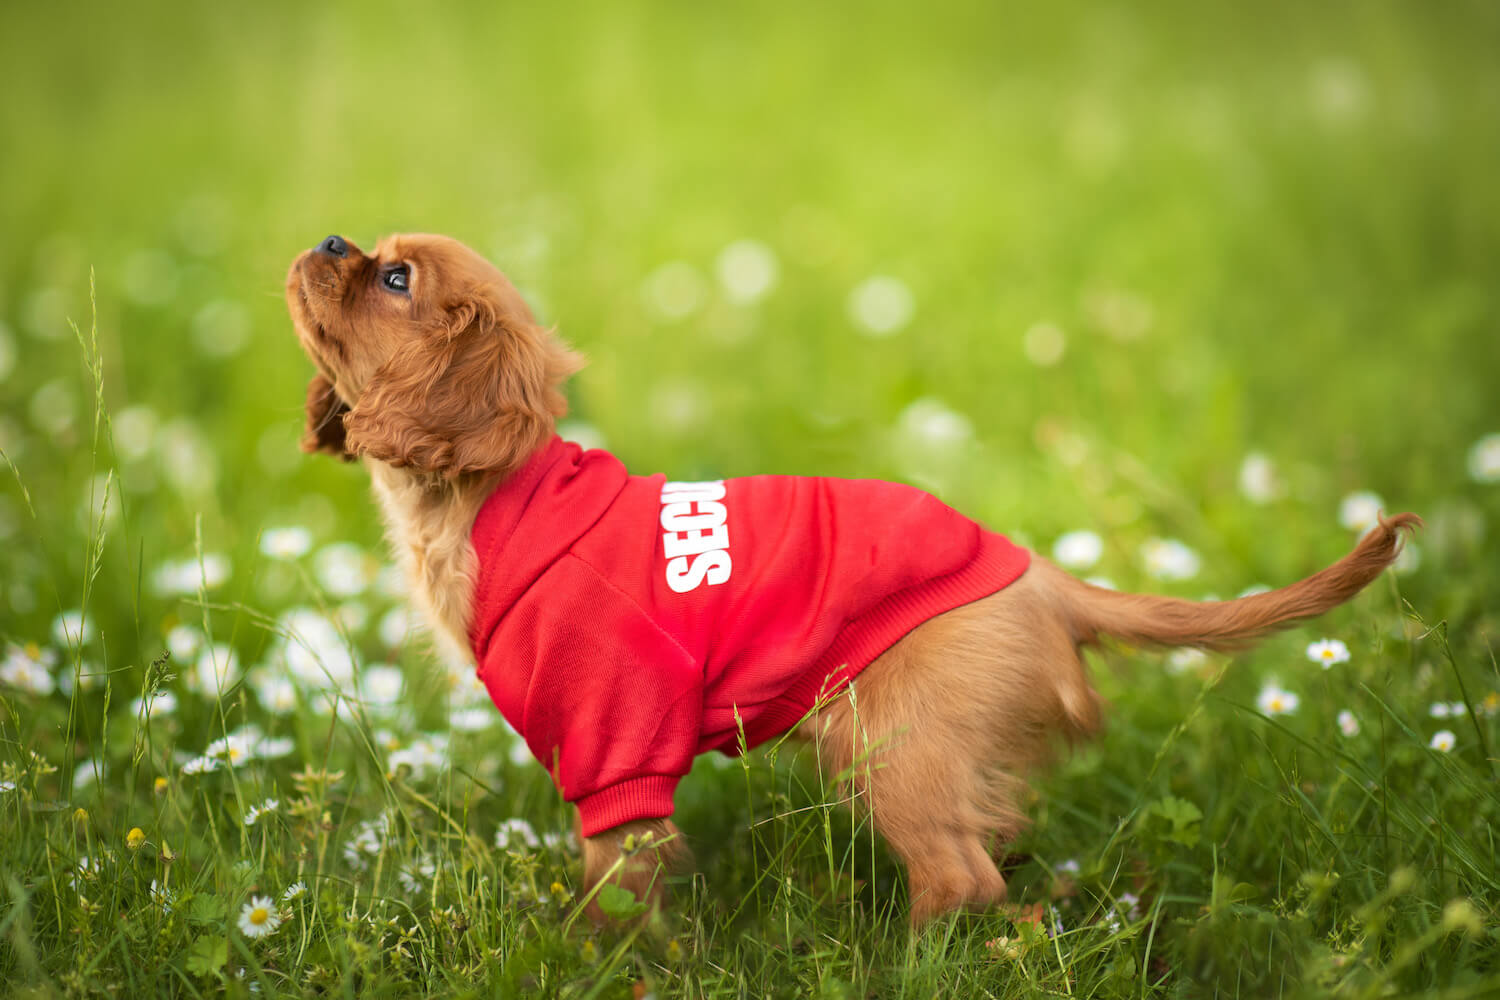 Vsepropejska Zagi sportovní mikina pro psa Barva: Červená, Délka zad (cm): 47, Obvod hrudníku: 58 - 64 cm